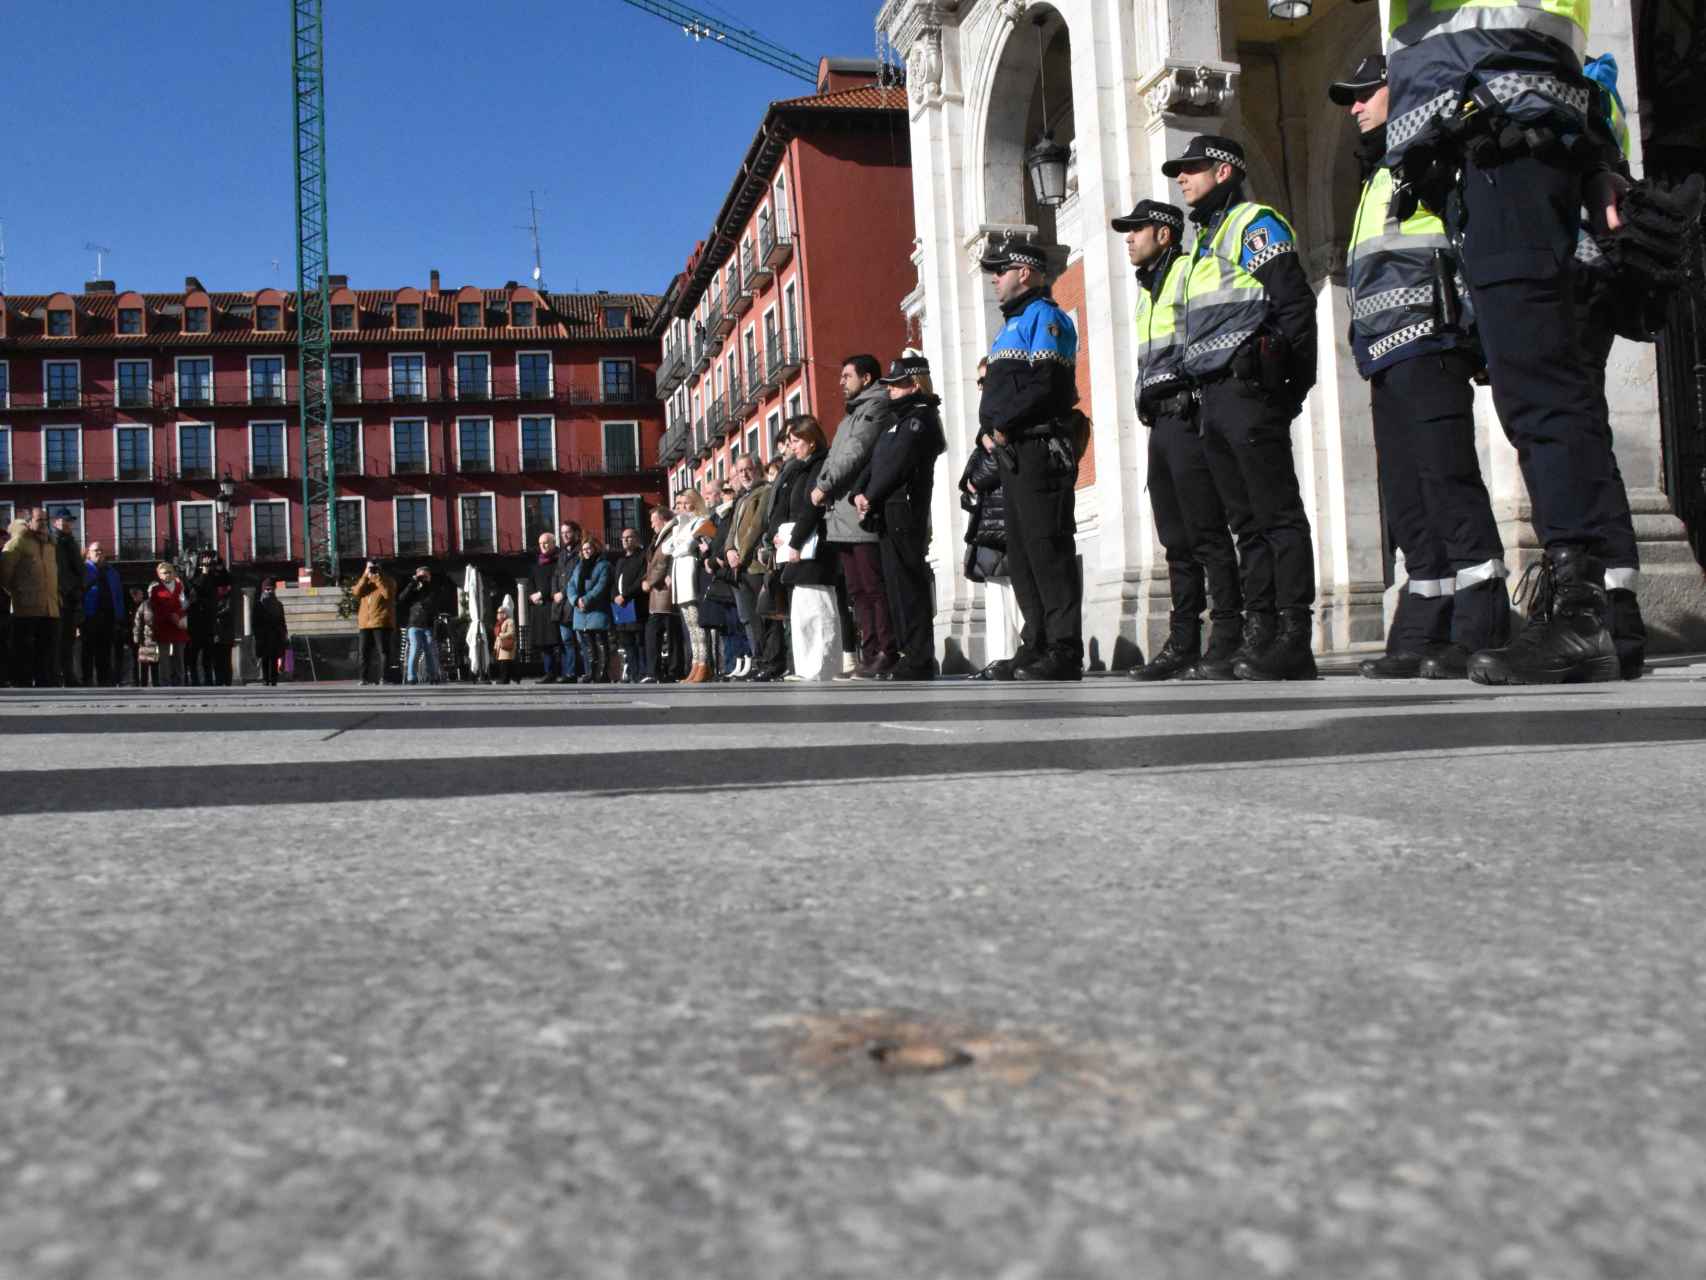 Minuto de silencio en el Ayuntamiento de Valladolid tras el asesinato de una madre y su hija durante esta madrugada.